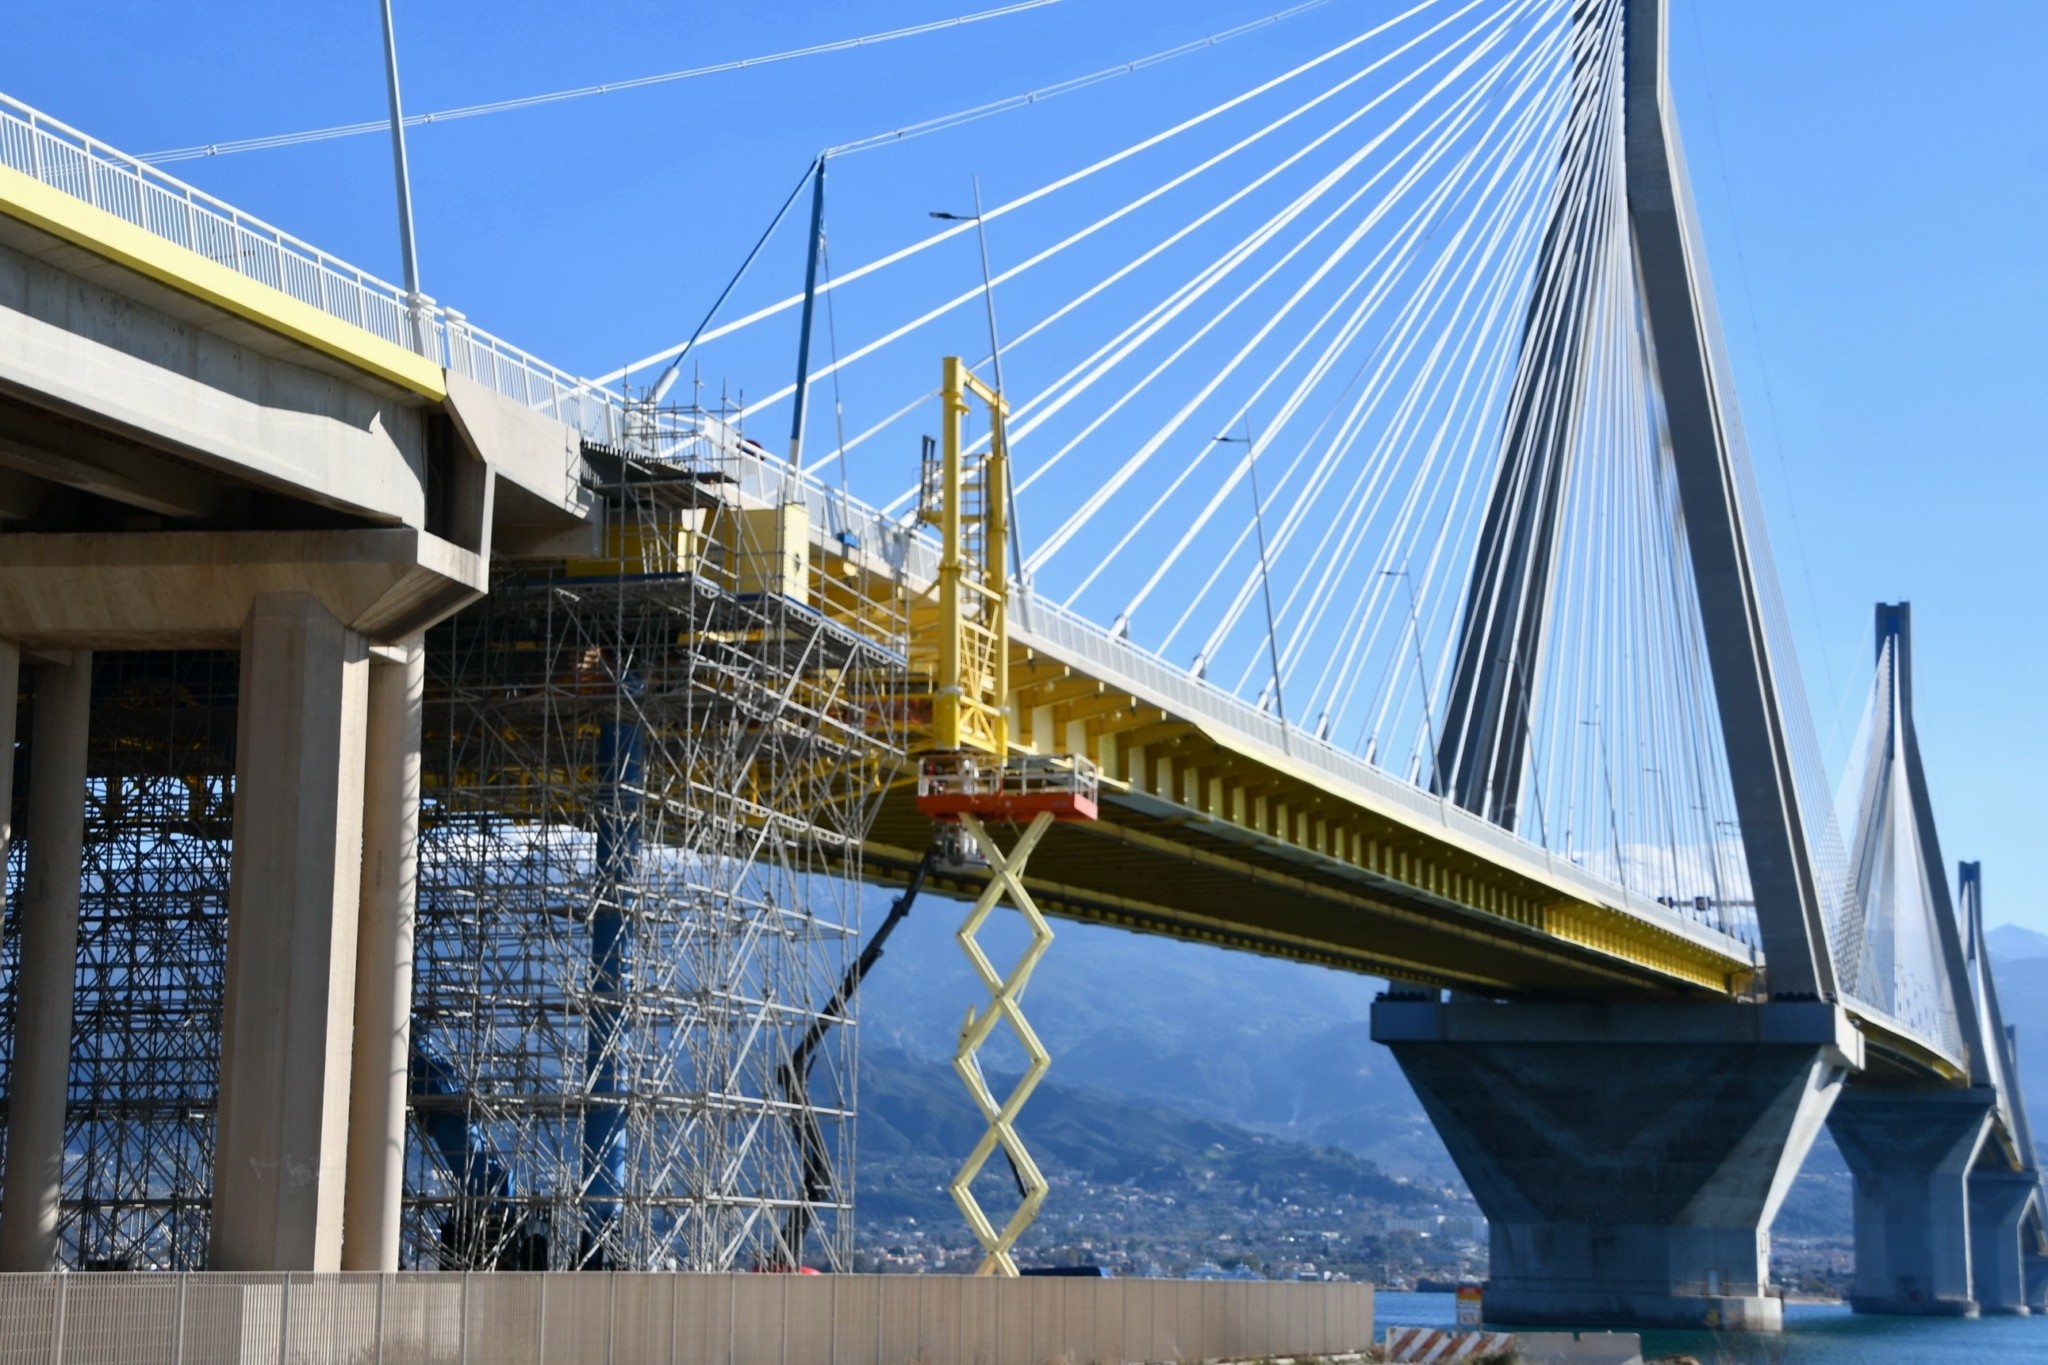 Γέφυρα: Επενδύσεις €7,4 εκατ. σε καινοτόμα έργα συντήρησης στη ζεύξη Ρίου – Αντιρρίου